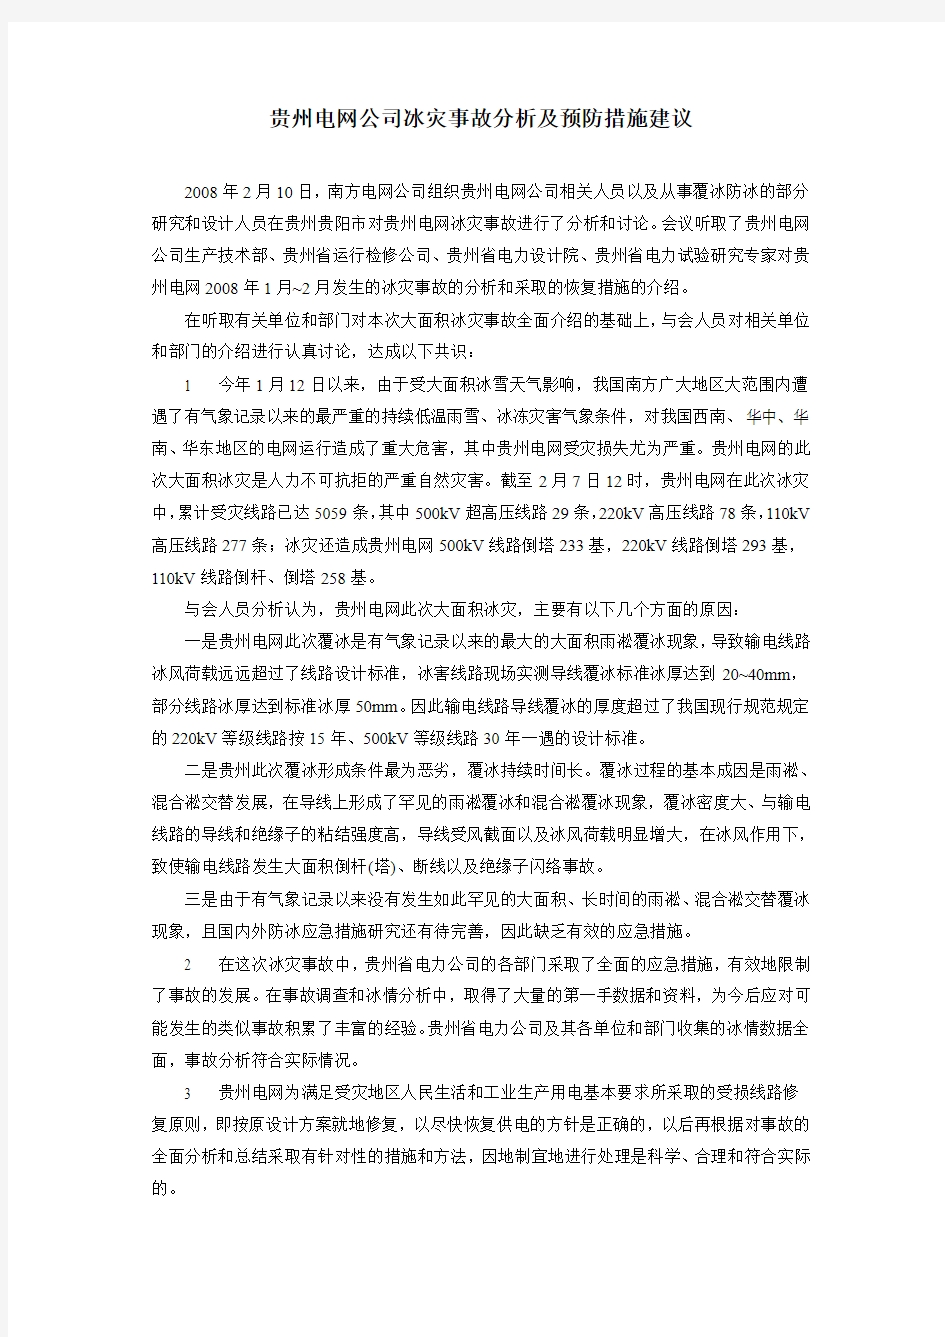 贵州电网公司冰灾事故分析及预防措施建议